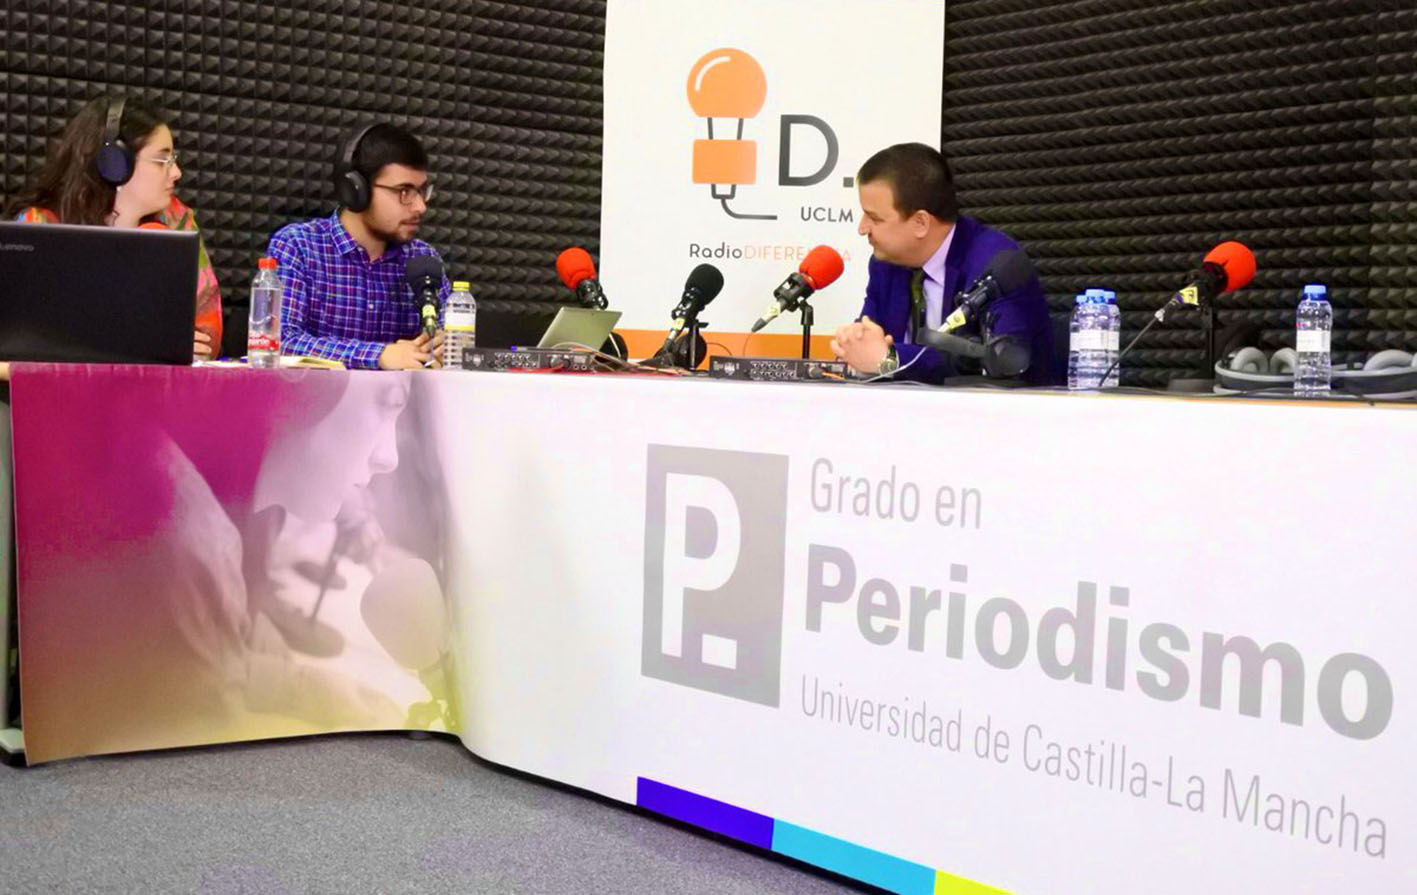 Villar de Cañas, absolutamente descartado como cementerio nuclear, ha dicho Martínez Arroyo a los estudiantes de Periodismo de la Facultad de Cuenca.